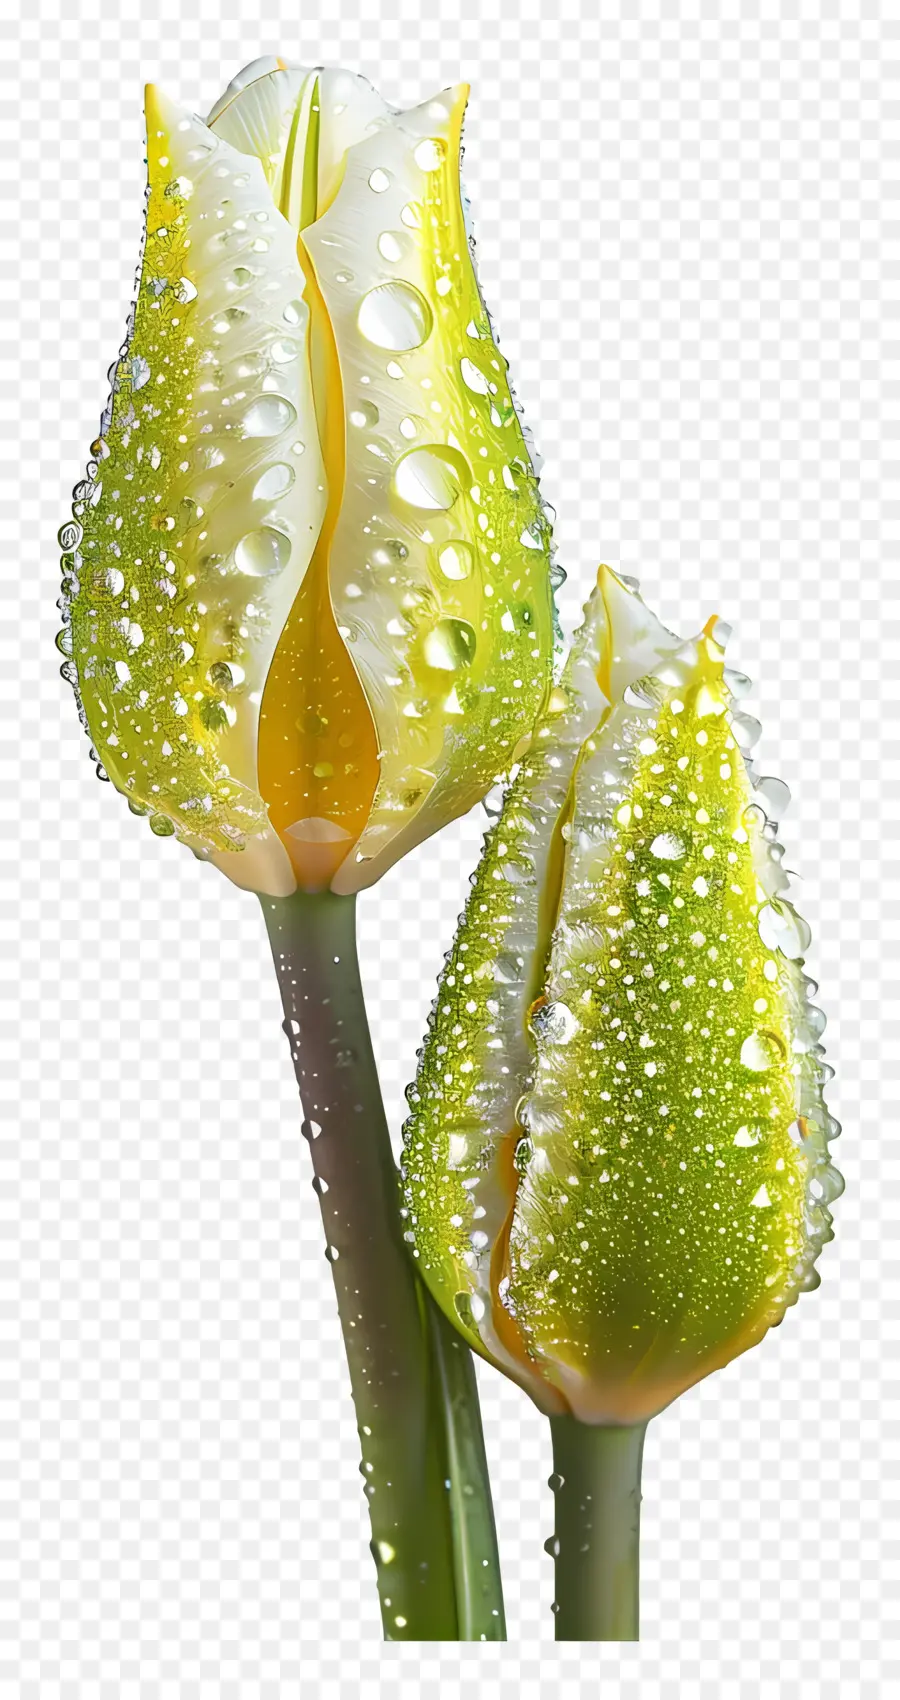 Wassertropfen - Zwei gelbe Tulpen mit Wassertropfen